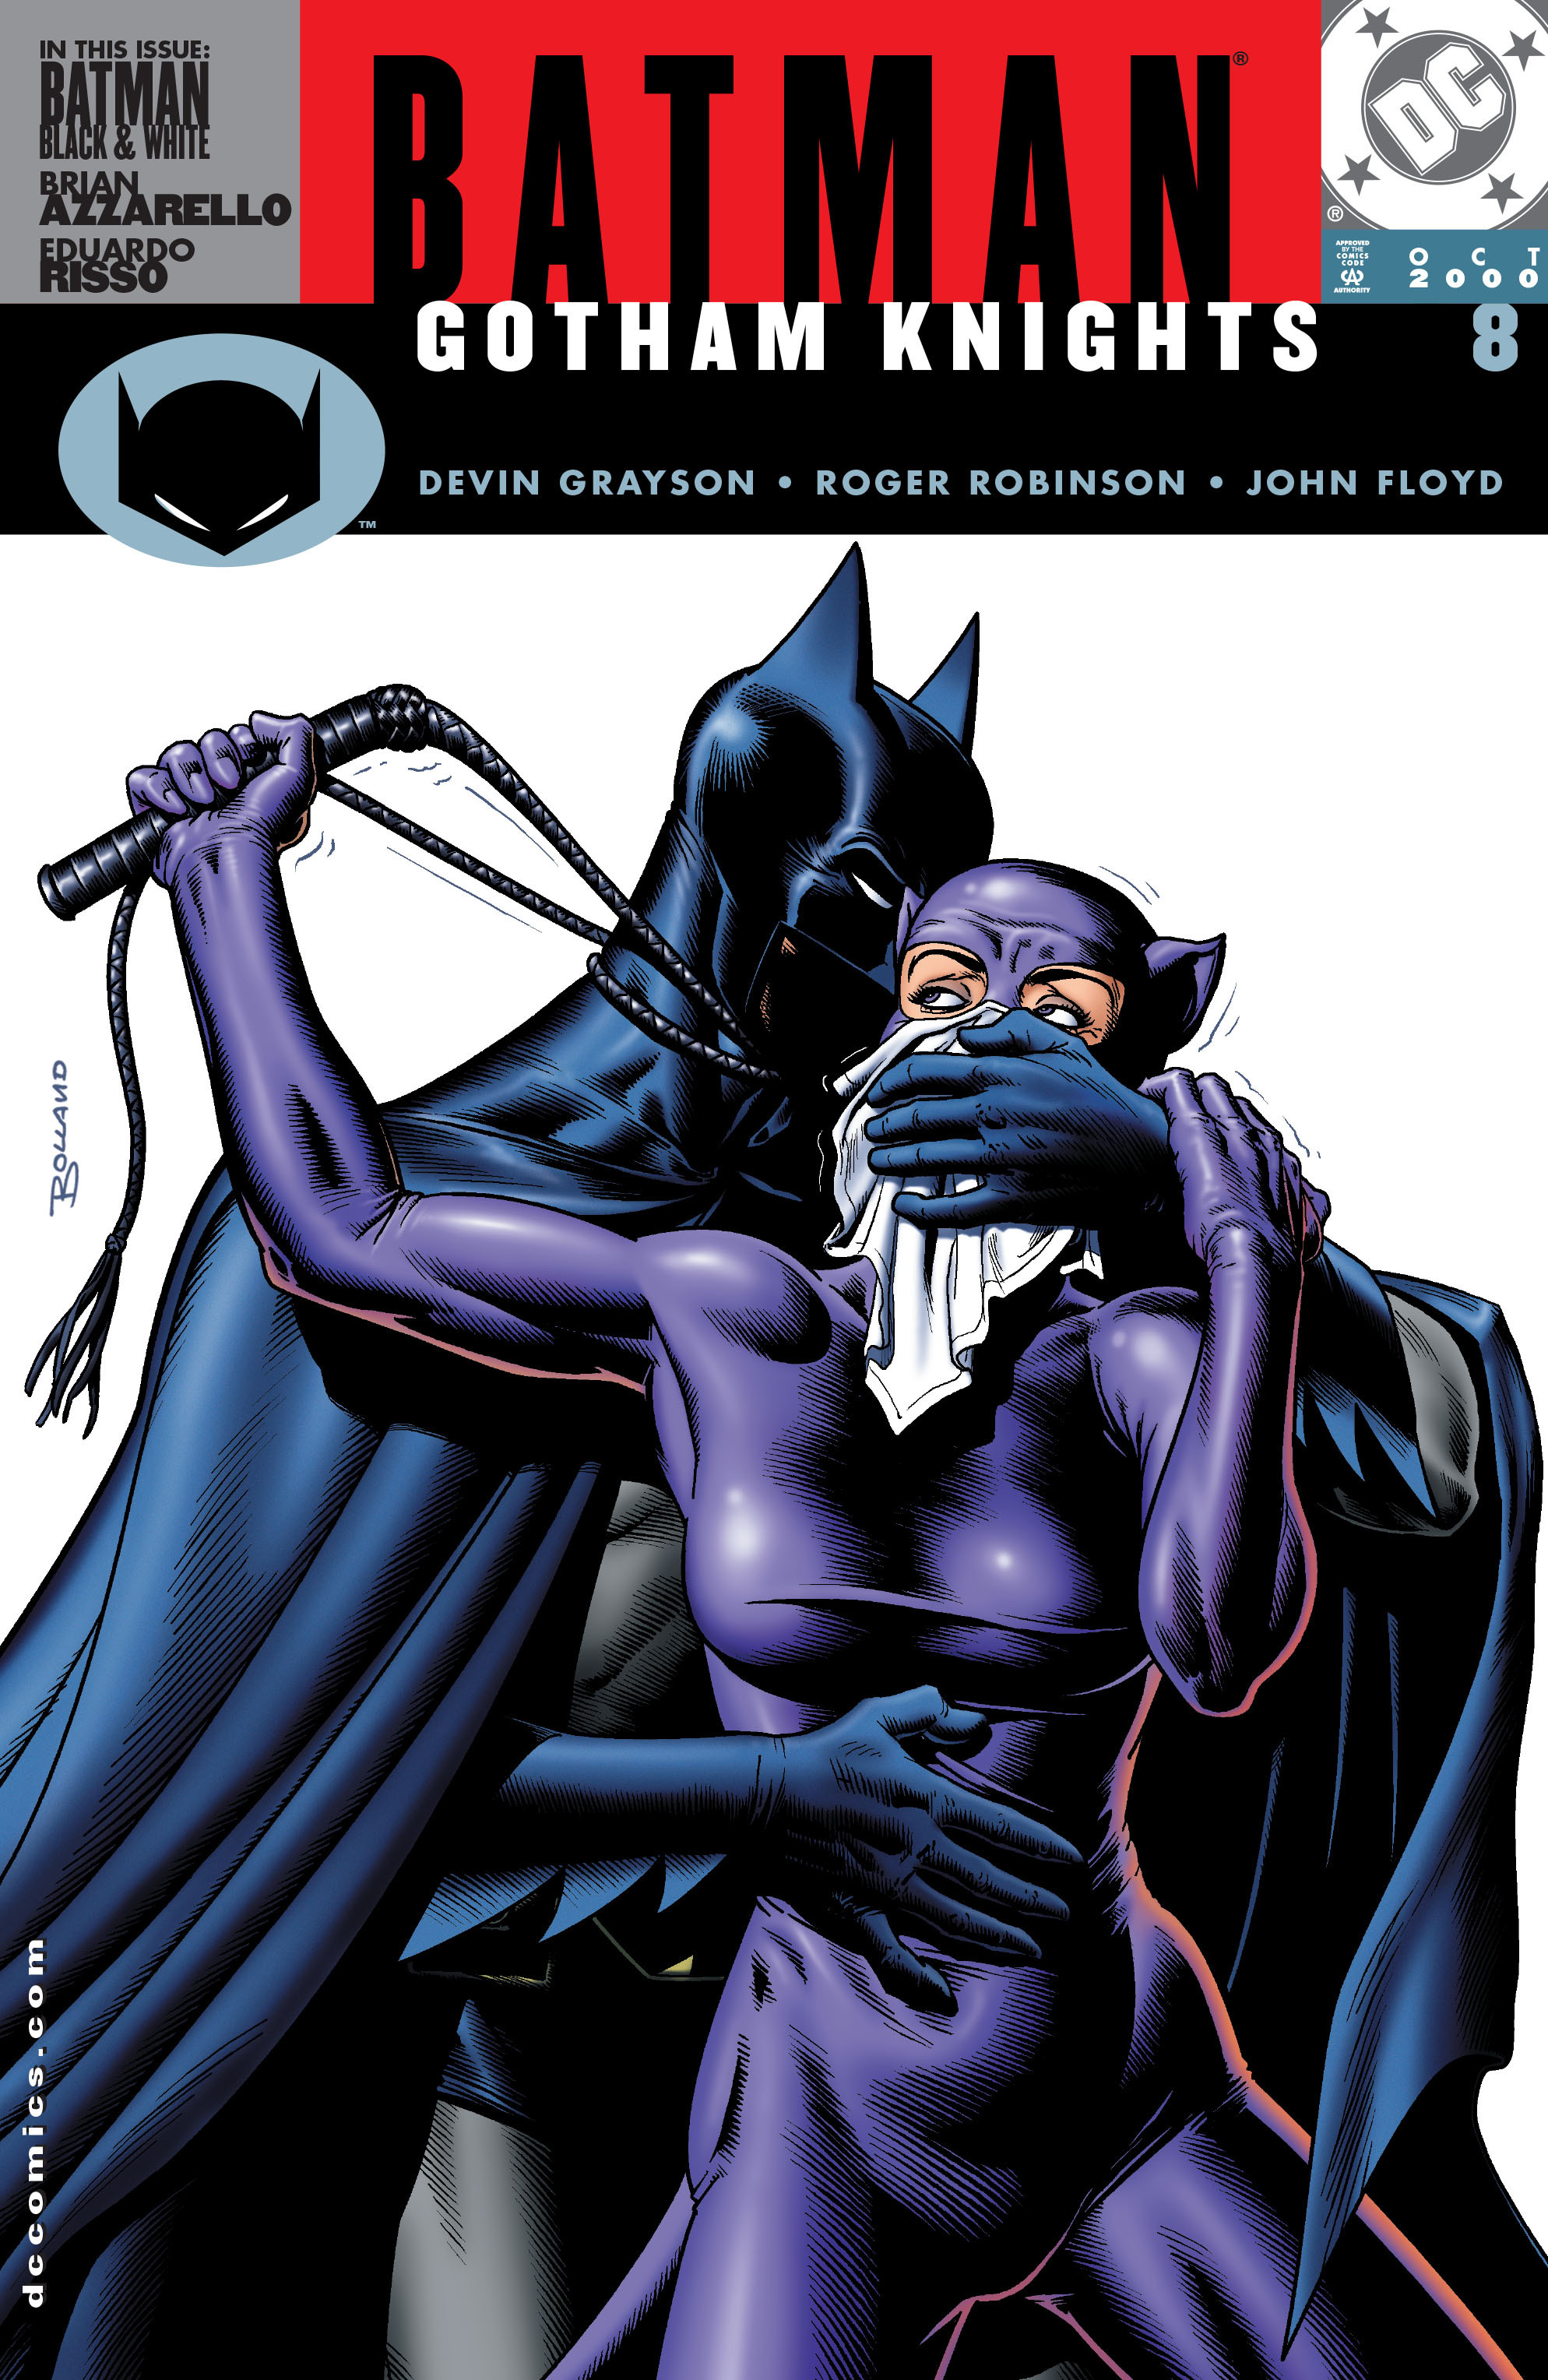 Batman Gotham Knights Issue 8 | Read Batman Gotham Knights Issue 8 comic  online in high quality. Read Full Comic online for free - Read comics online  in high quality .| READ COMIC ONLINE